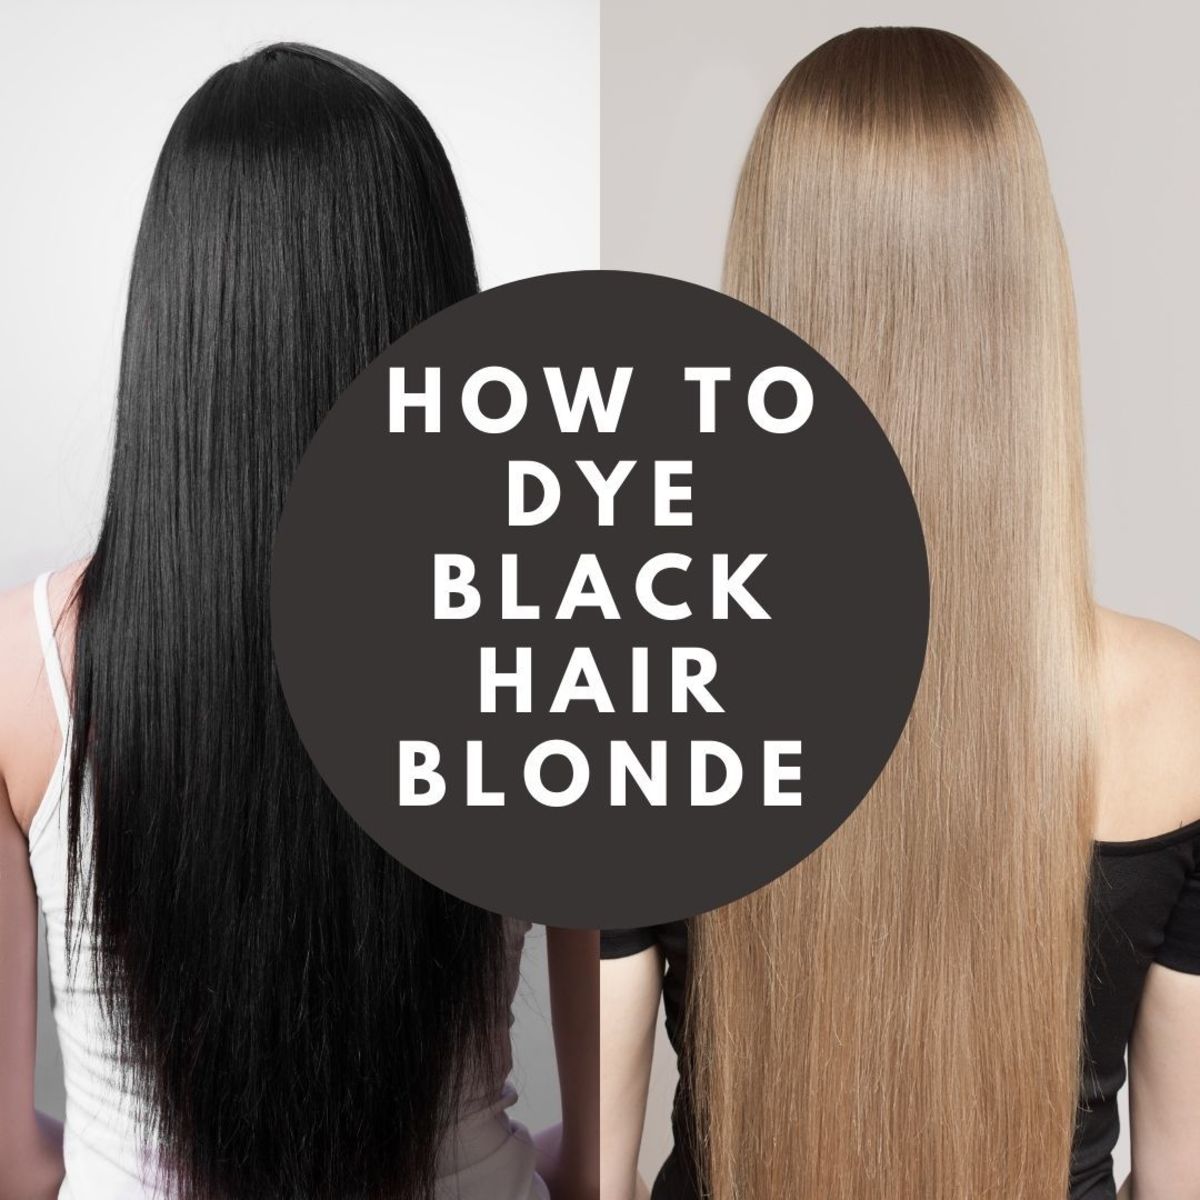 Blacks and blonds com